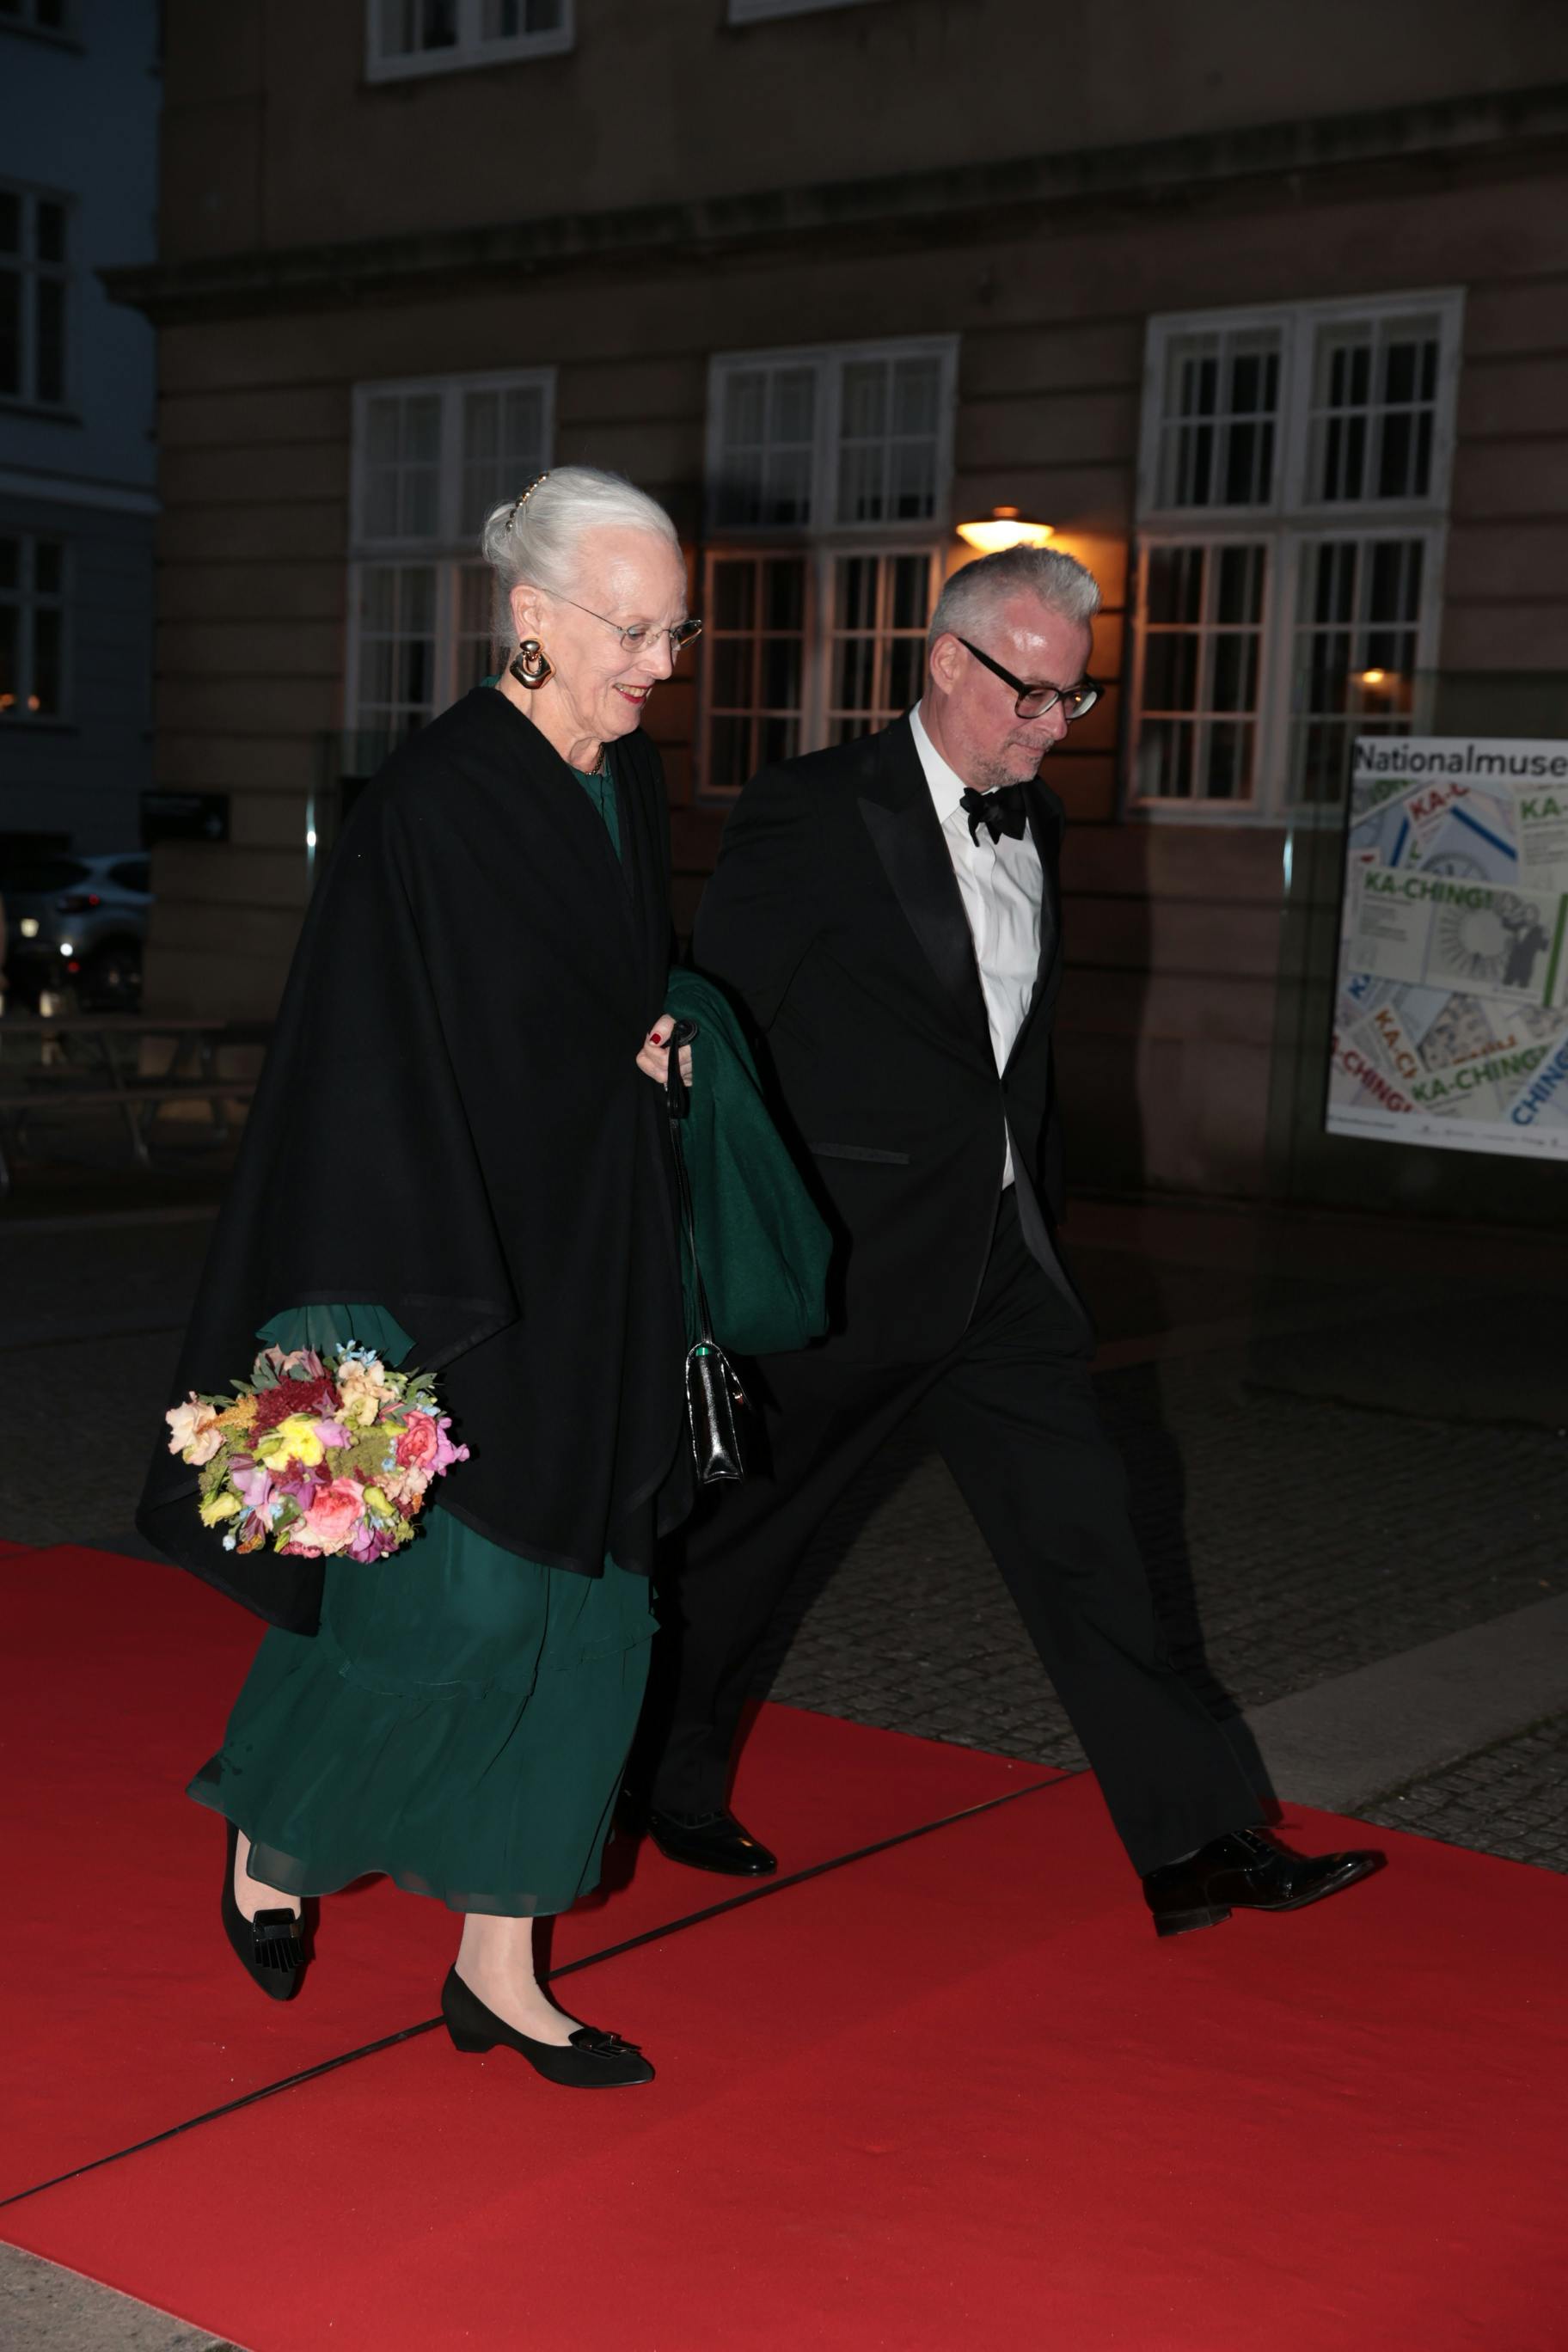 Dronning Margrethe blev budt velkommen af Nationalmuseets direktør Rane Willerslev, da hun deltog i forskningen døgn.&nbsp;
